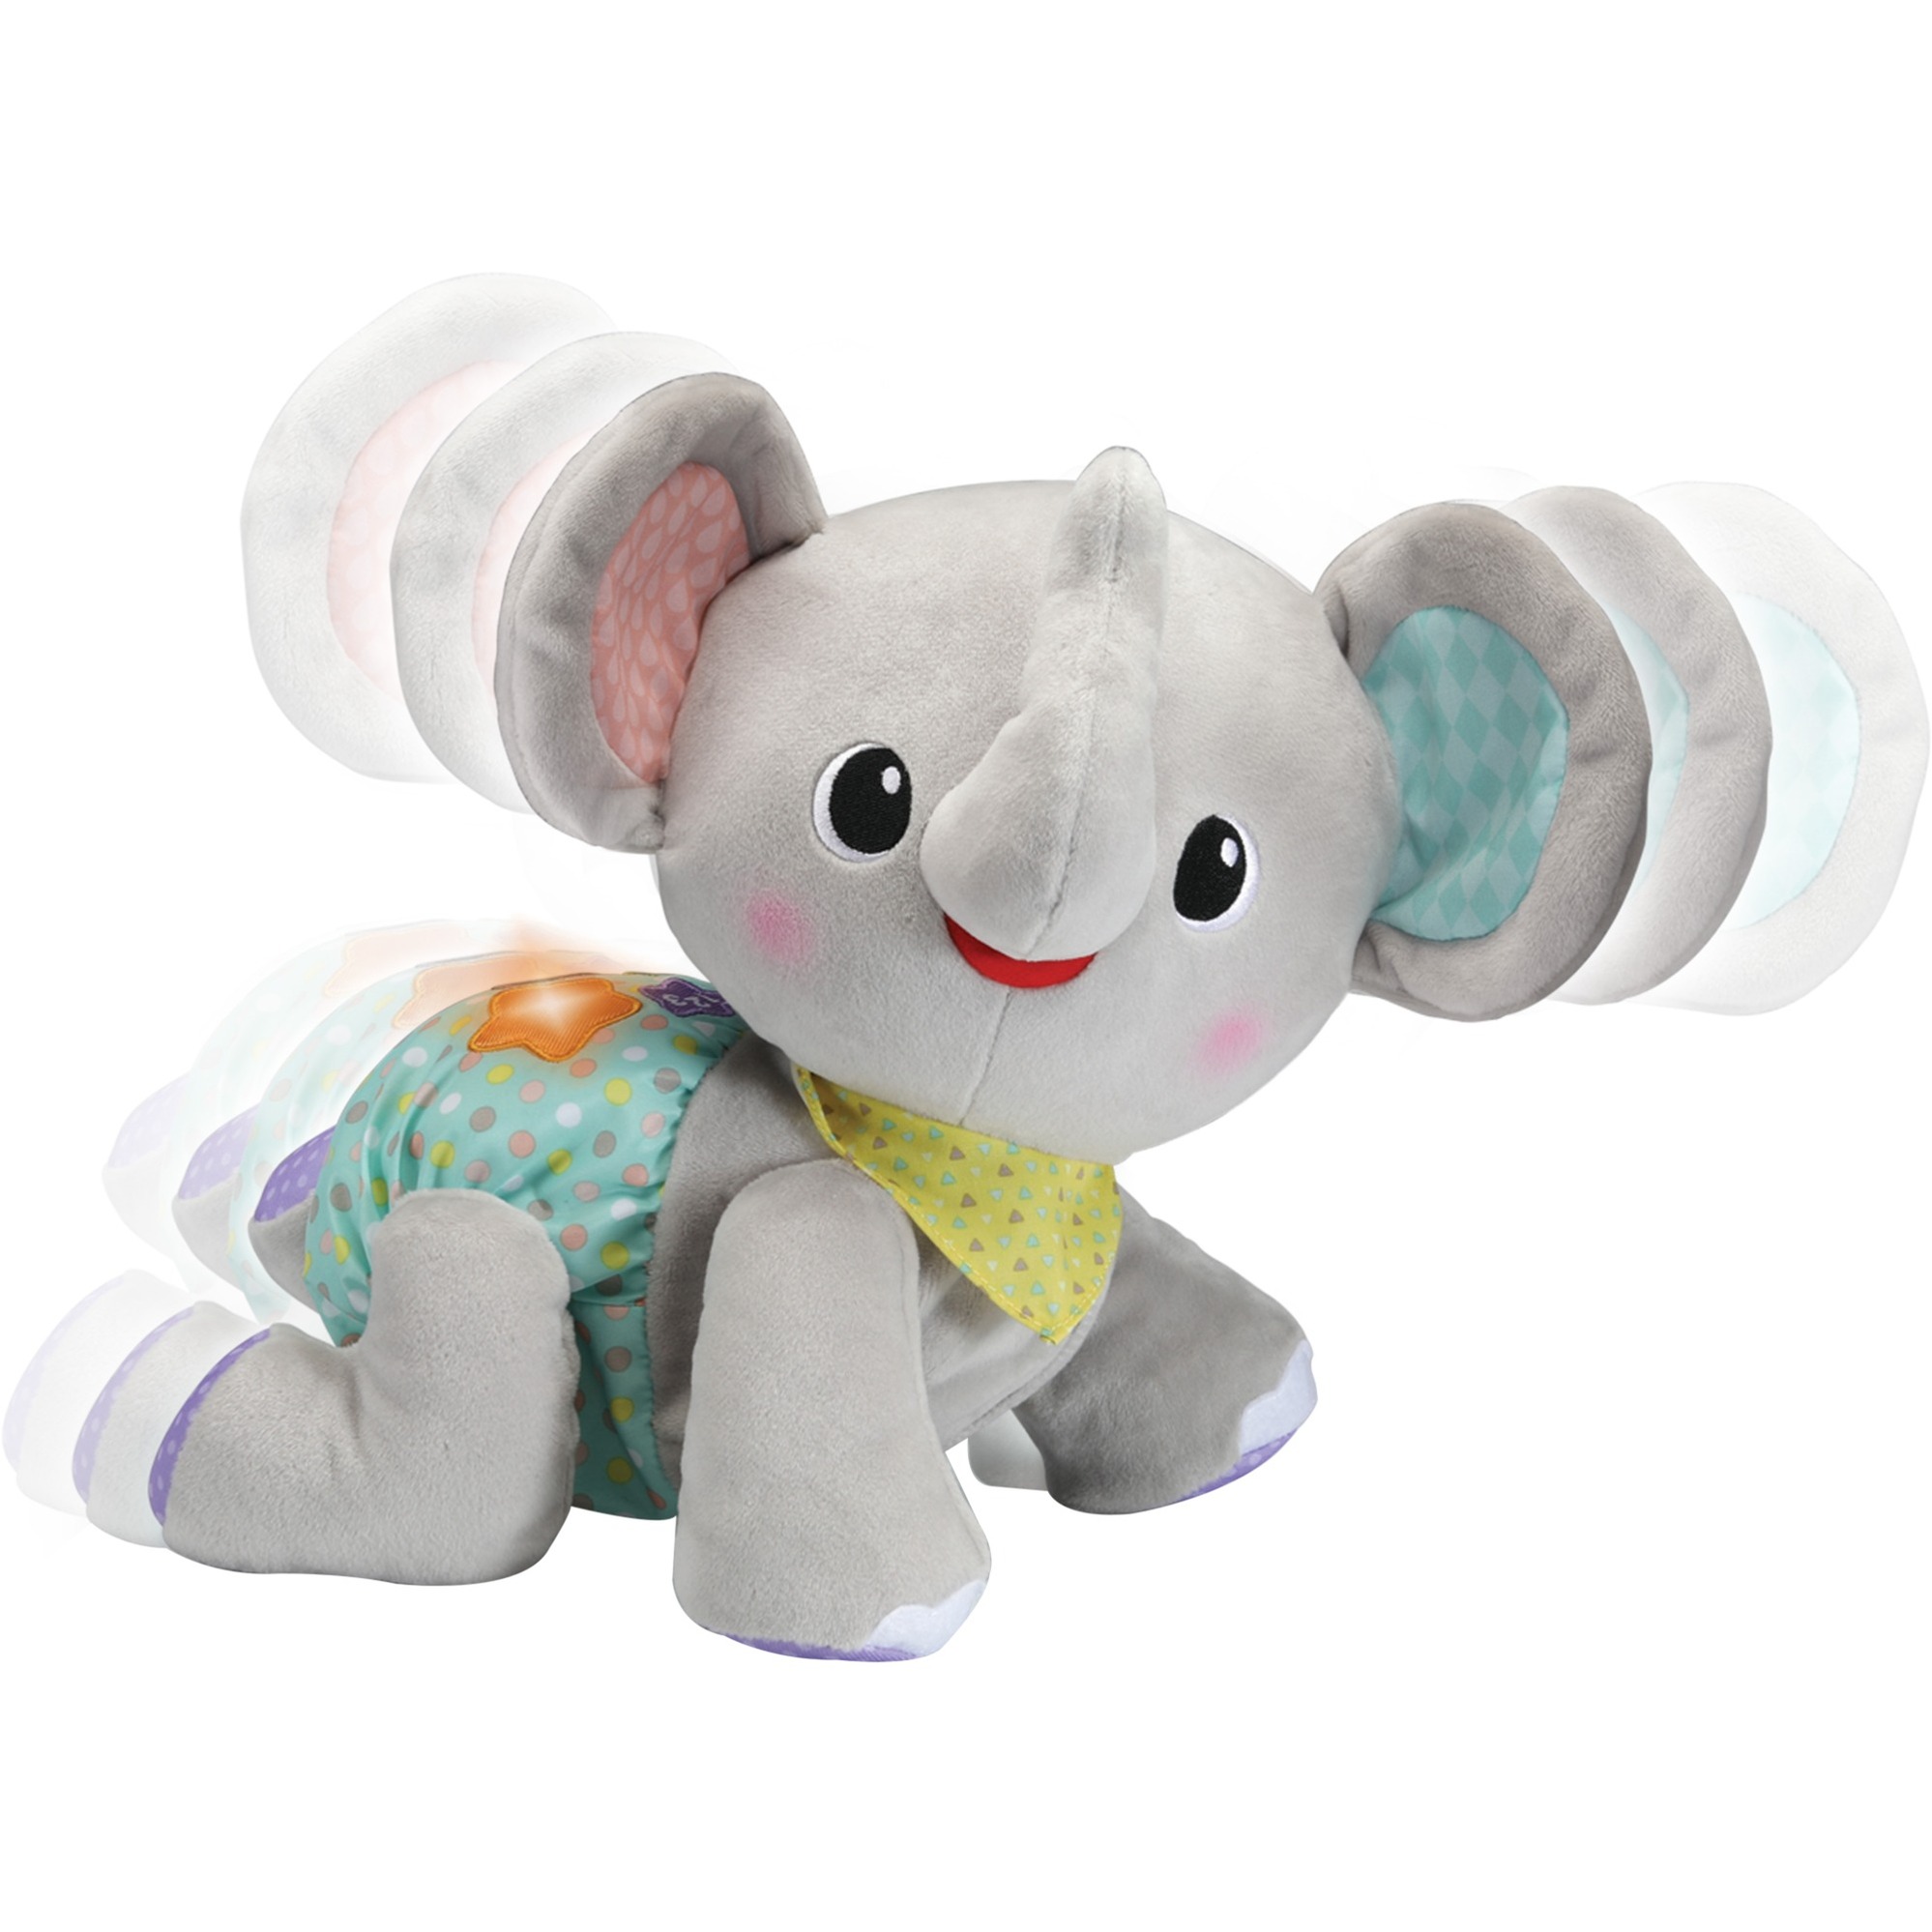 Image of Alternate - Krabbel-mit-mir-Elefant, Spielfigur online einkaufen bei Alternate